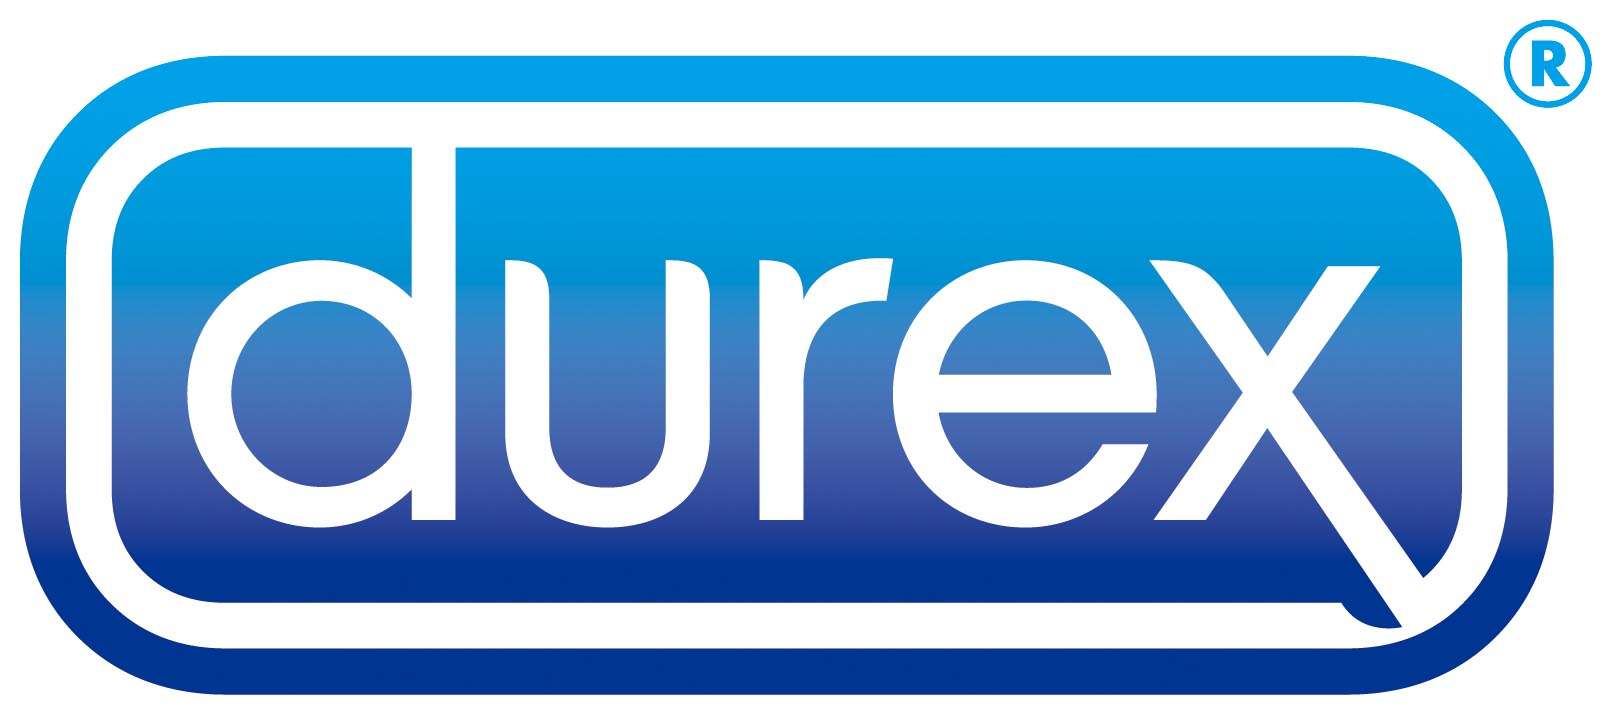 Durex Condoms Logo